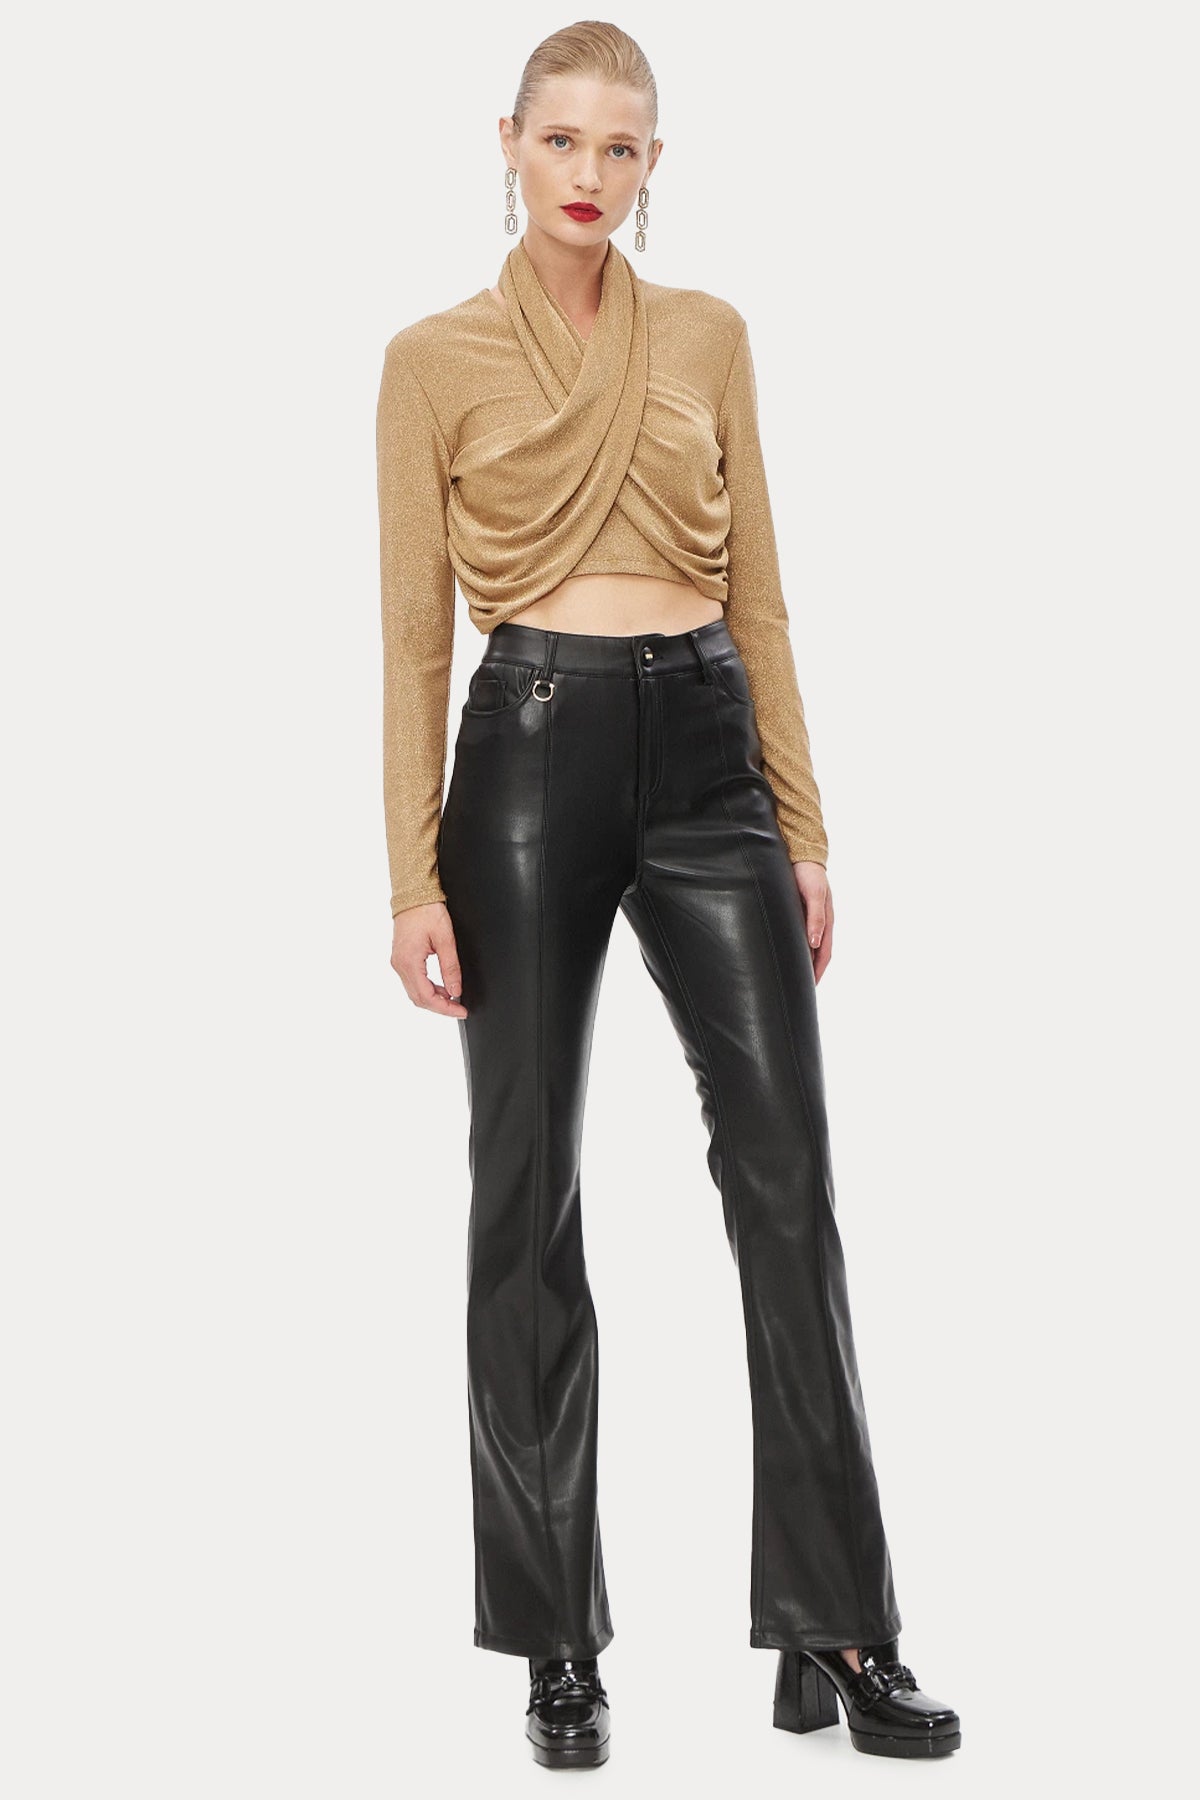 Bsb Yüksek Bel Deri Pantolon-Libas Trendy Fashion Store